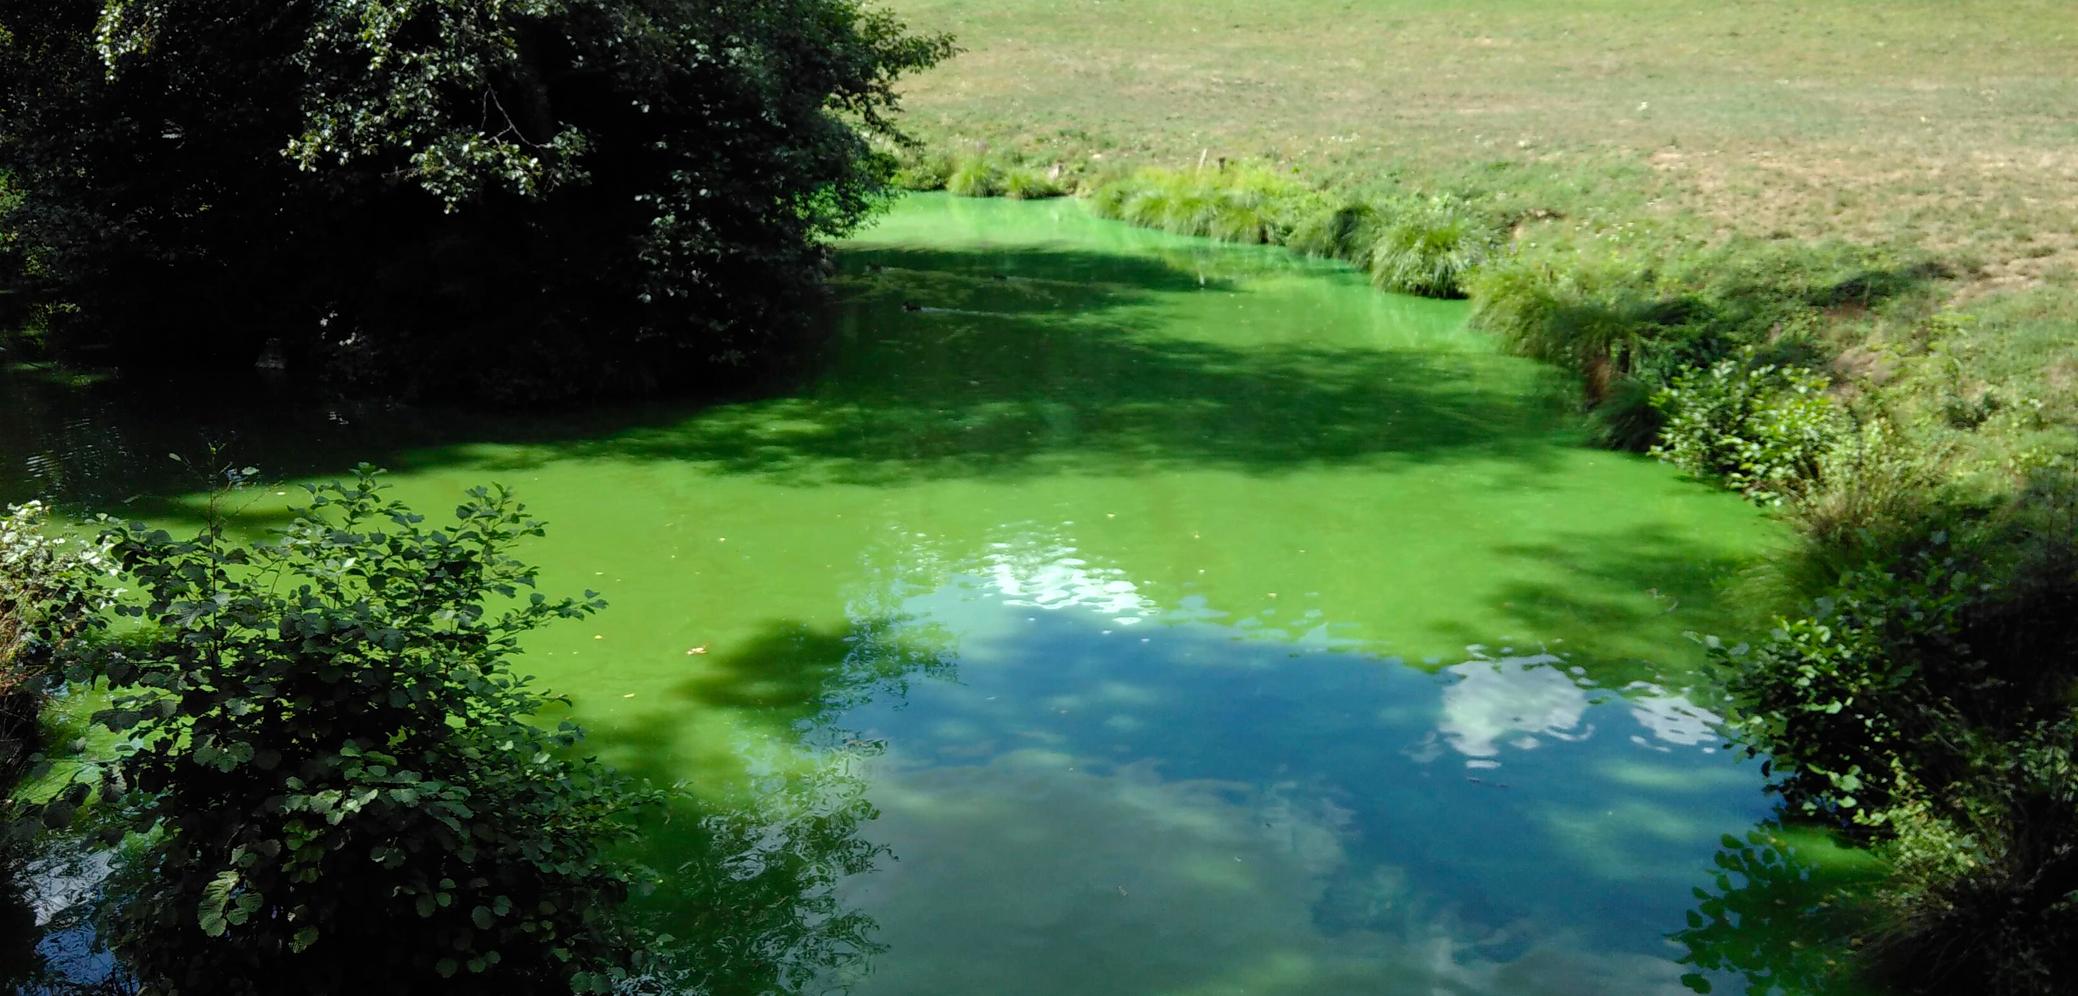 Prolifération algale dans un plan d'eau en Maine-et-Loire, manifestation du phénomène d'eutrophisation OIEau